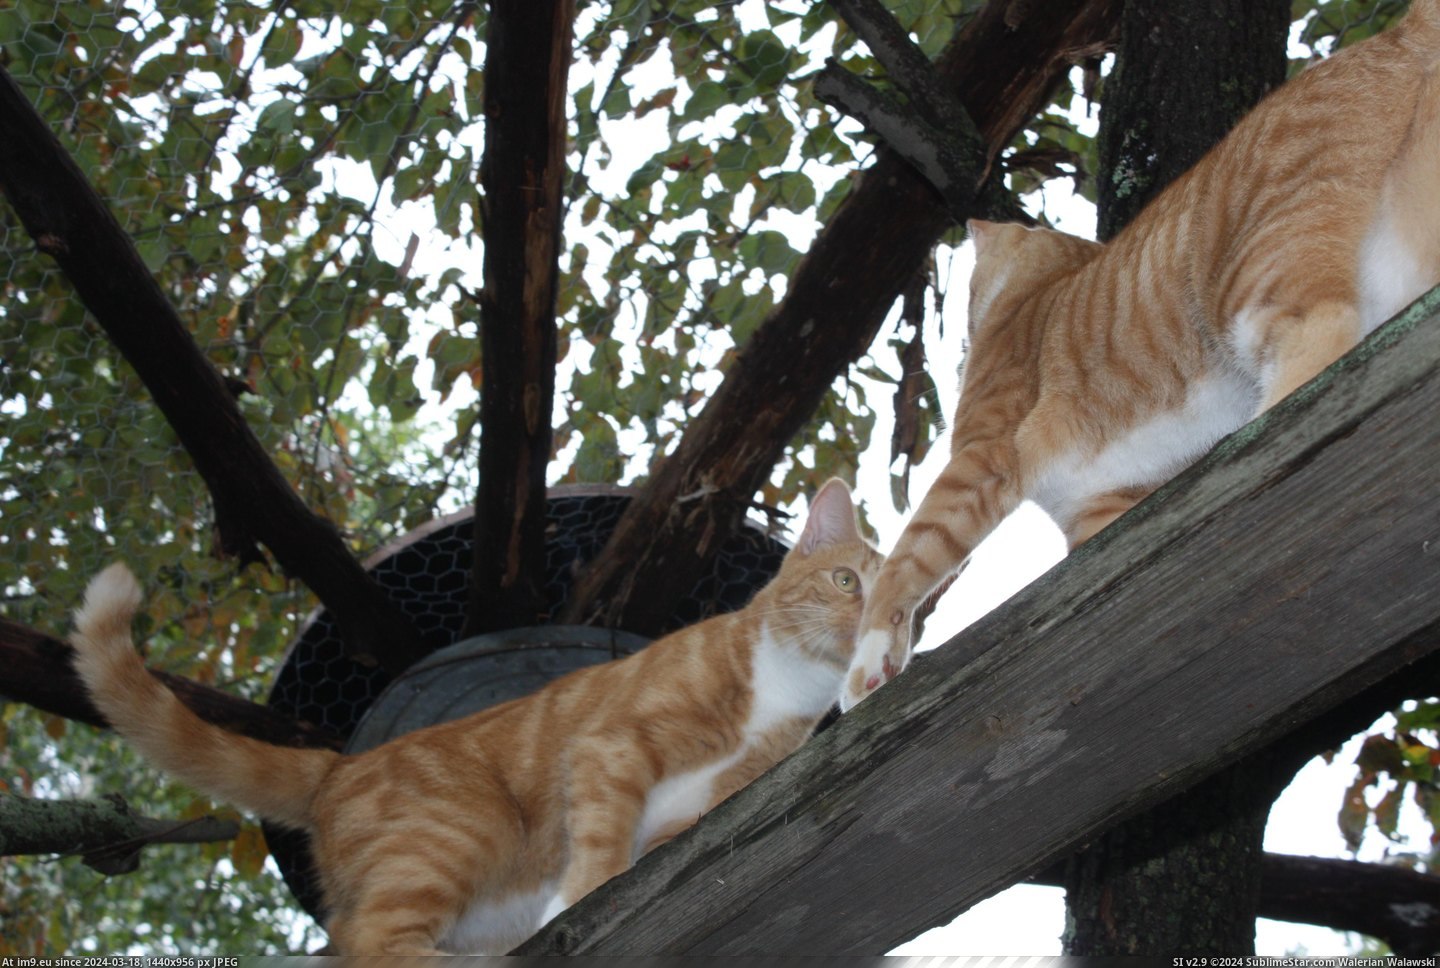 #Cats #Pen #Cat [Cats] Cat pen, cats inside! 3 Pic. (Obraz z album My r/CATS favs))